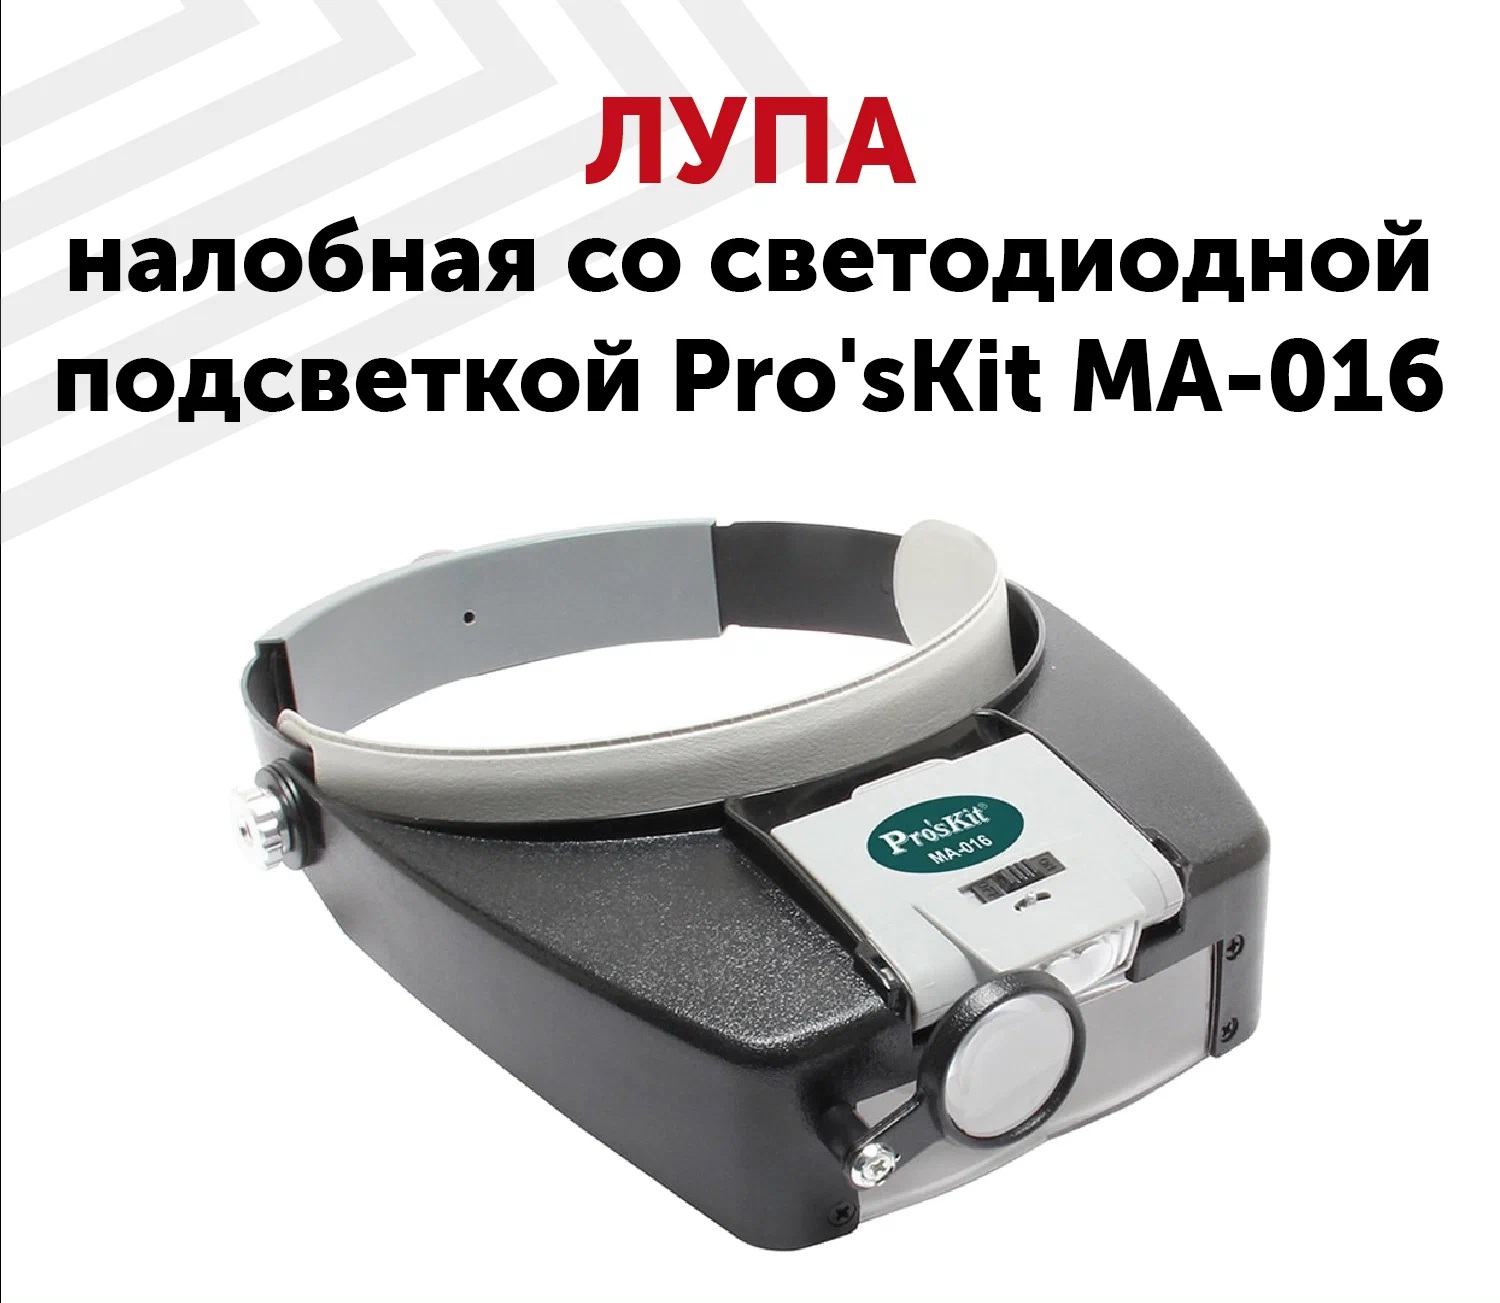 ProsKit MA-016 Бинокулярная лупа с головным креплением и LED подсветкой